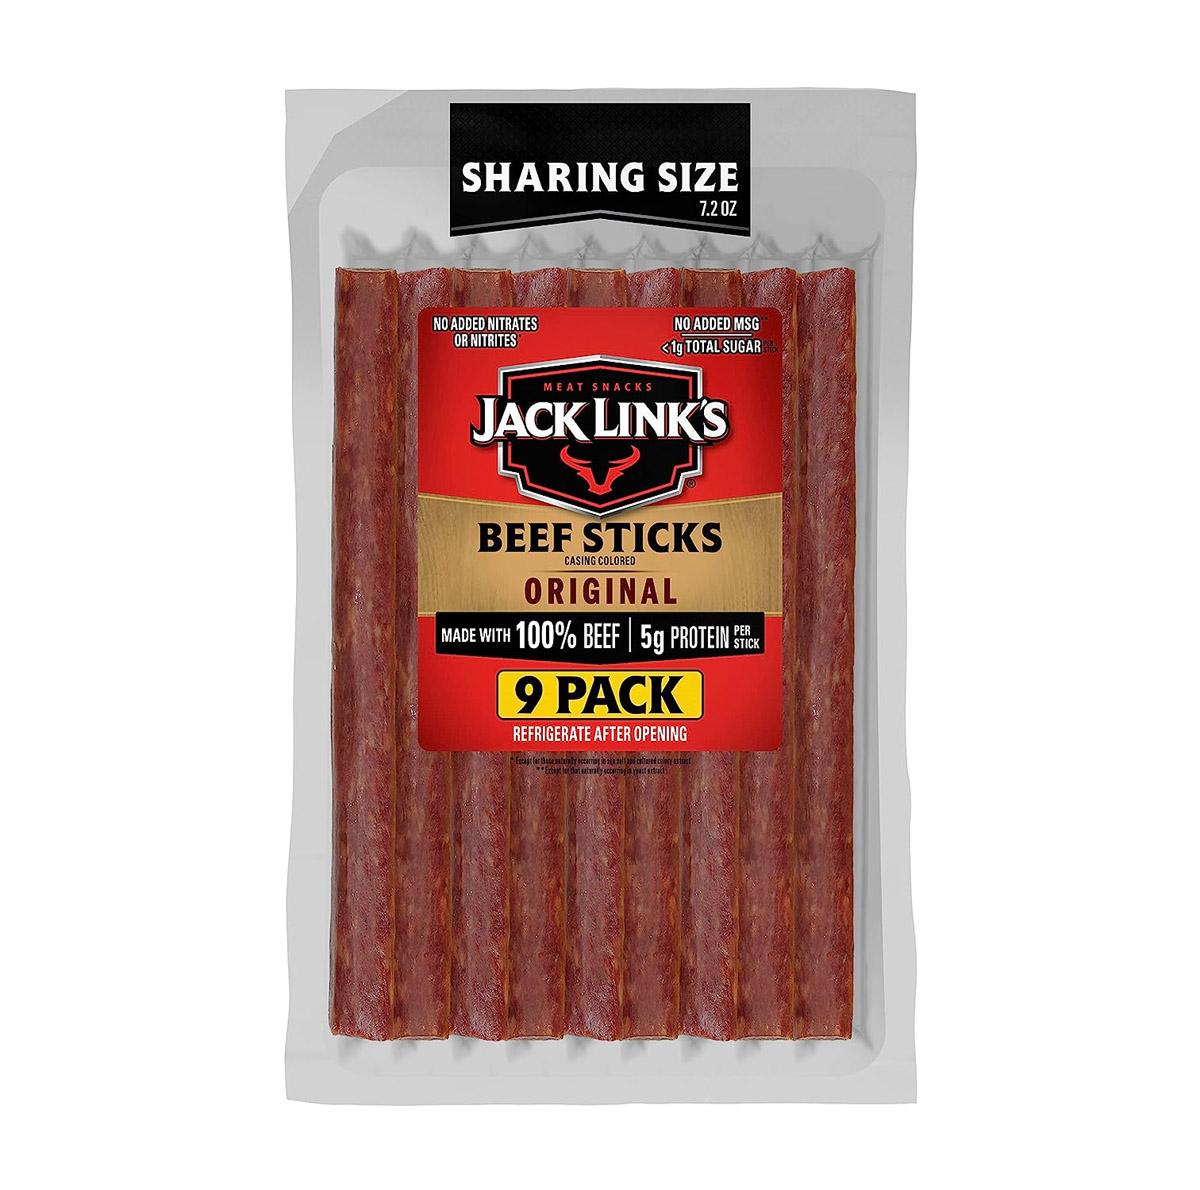 Jack Links Original Beef Sticks 9 Pack for $4.86